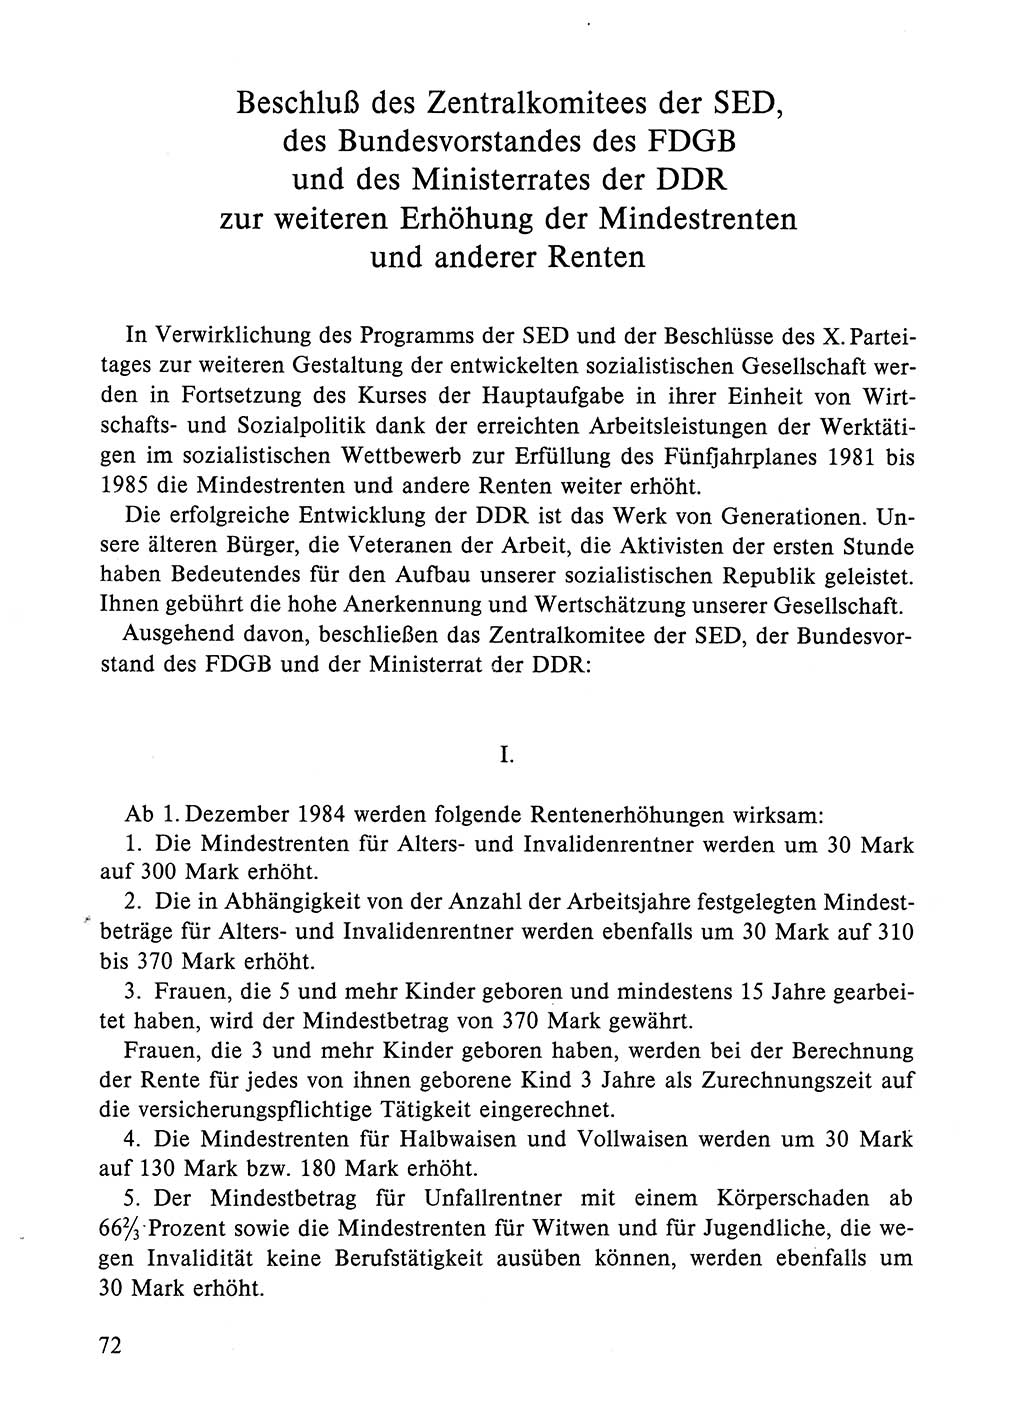 Dokumente der Sozialistischen Einheitspartei Deutschlands (SED) [Deutsche Demokratische Republik (DDR)] 1984-1985, Seite 72 (Dok. SED DDR 1984-1985, S. 72)